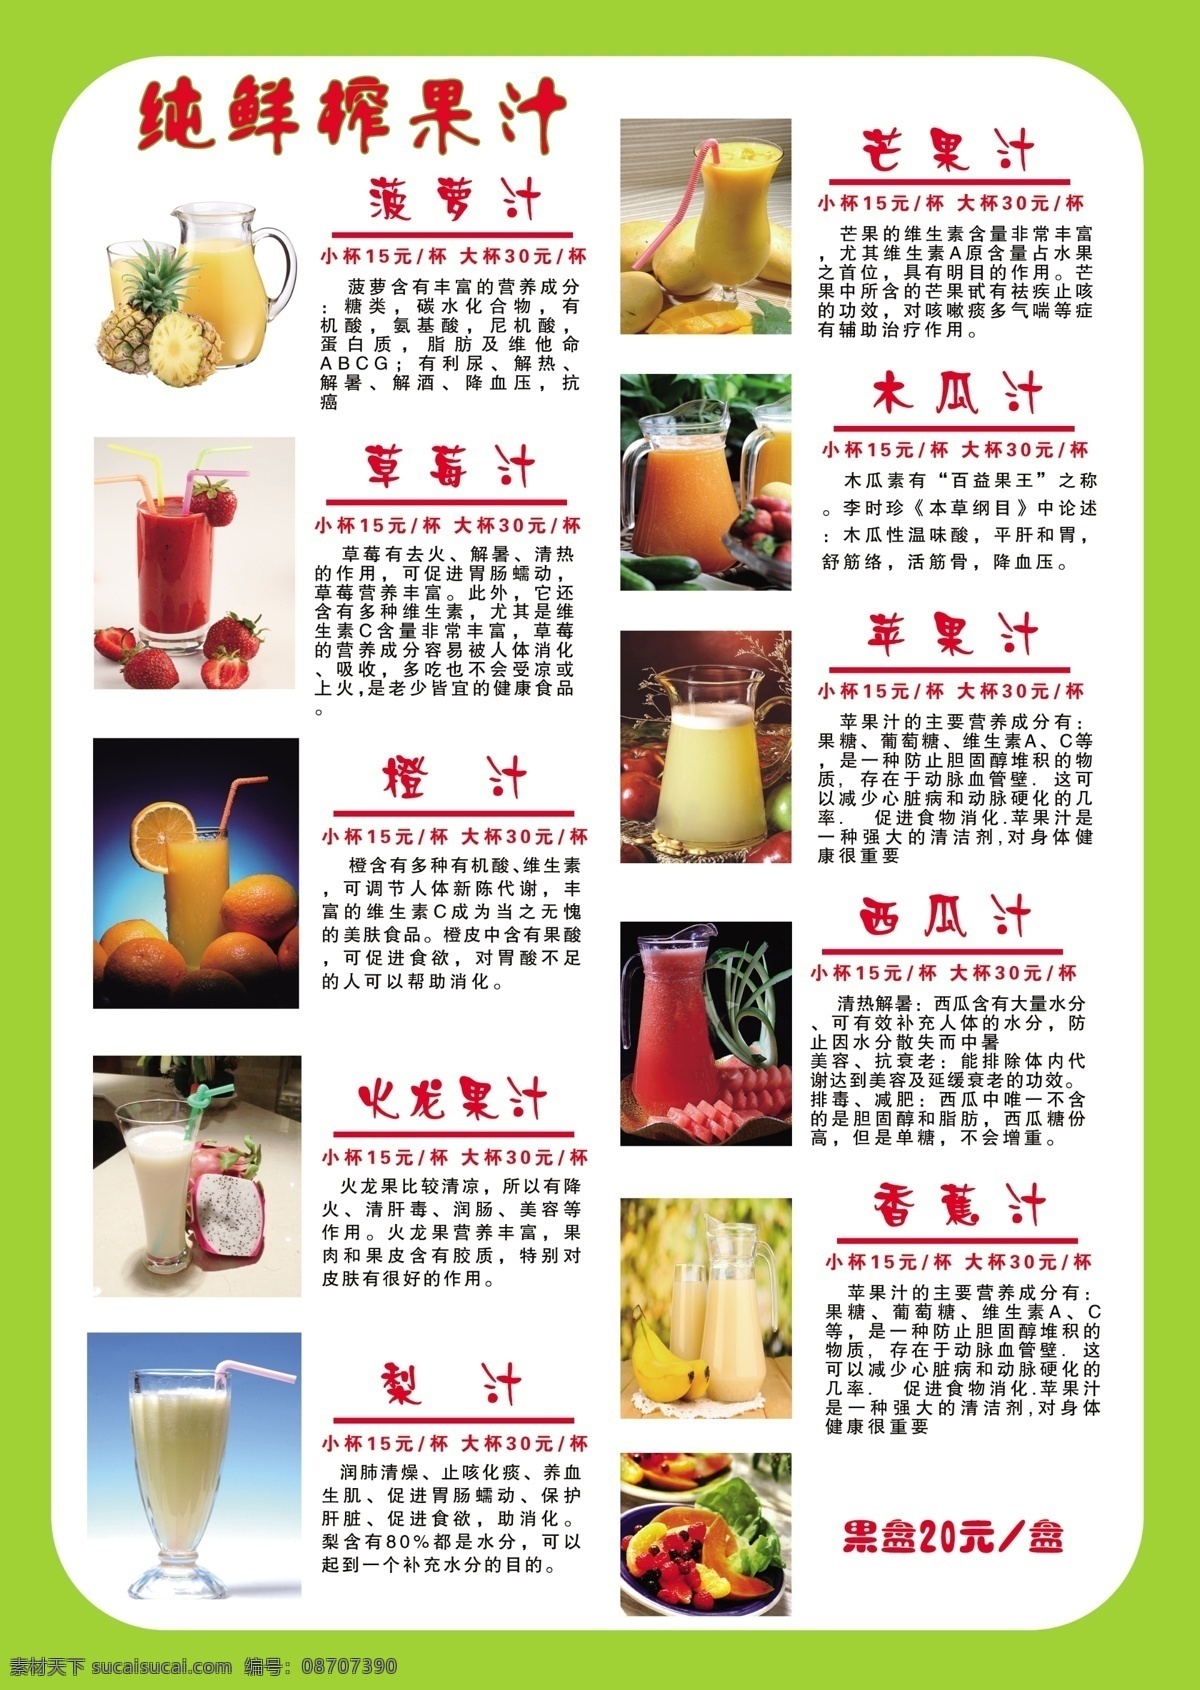 果汁菜单 果汁 菜单 水果 各种 价目表 水果单 菜单菜谱 广告设计模板 源文件